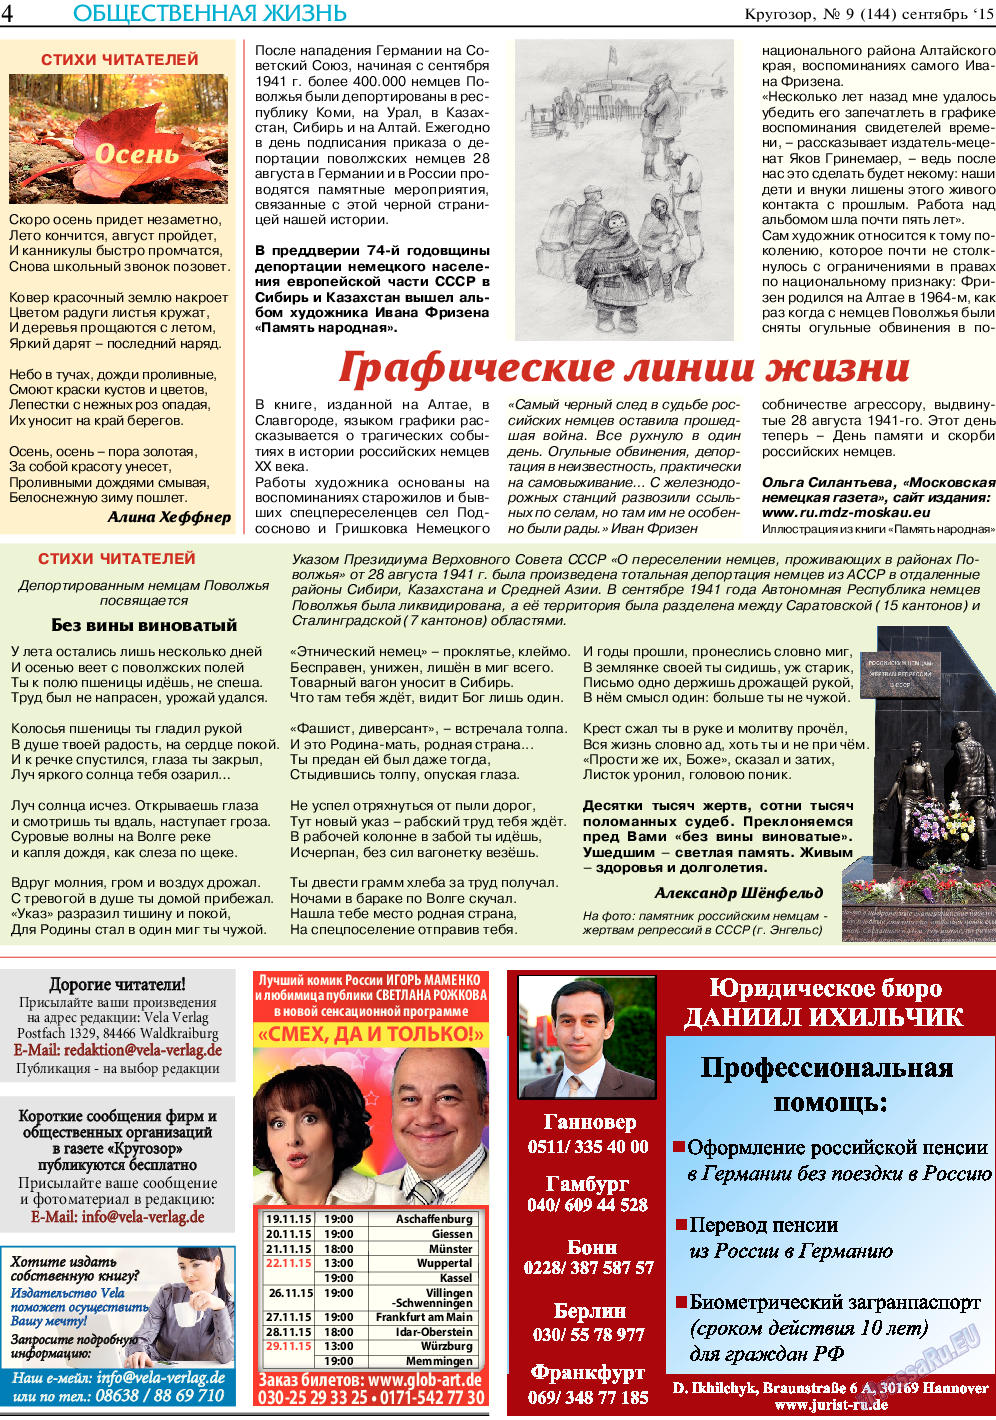 Кругозор, газета. 2015 №9 стр.4